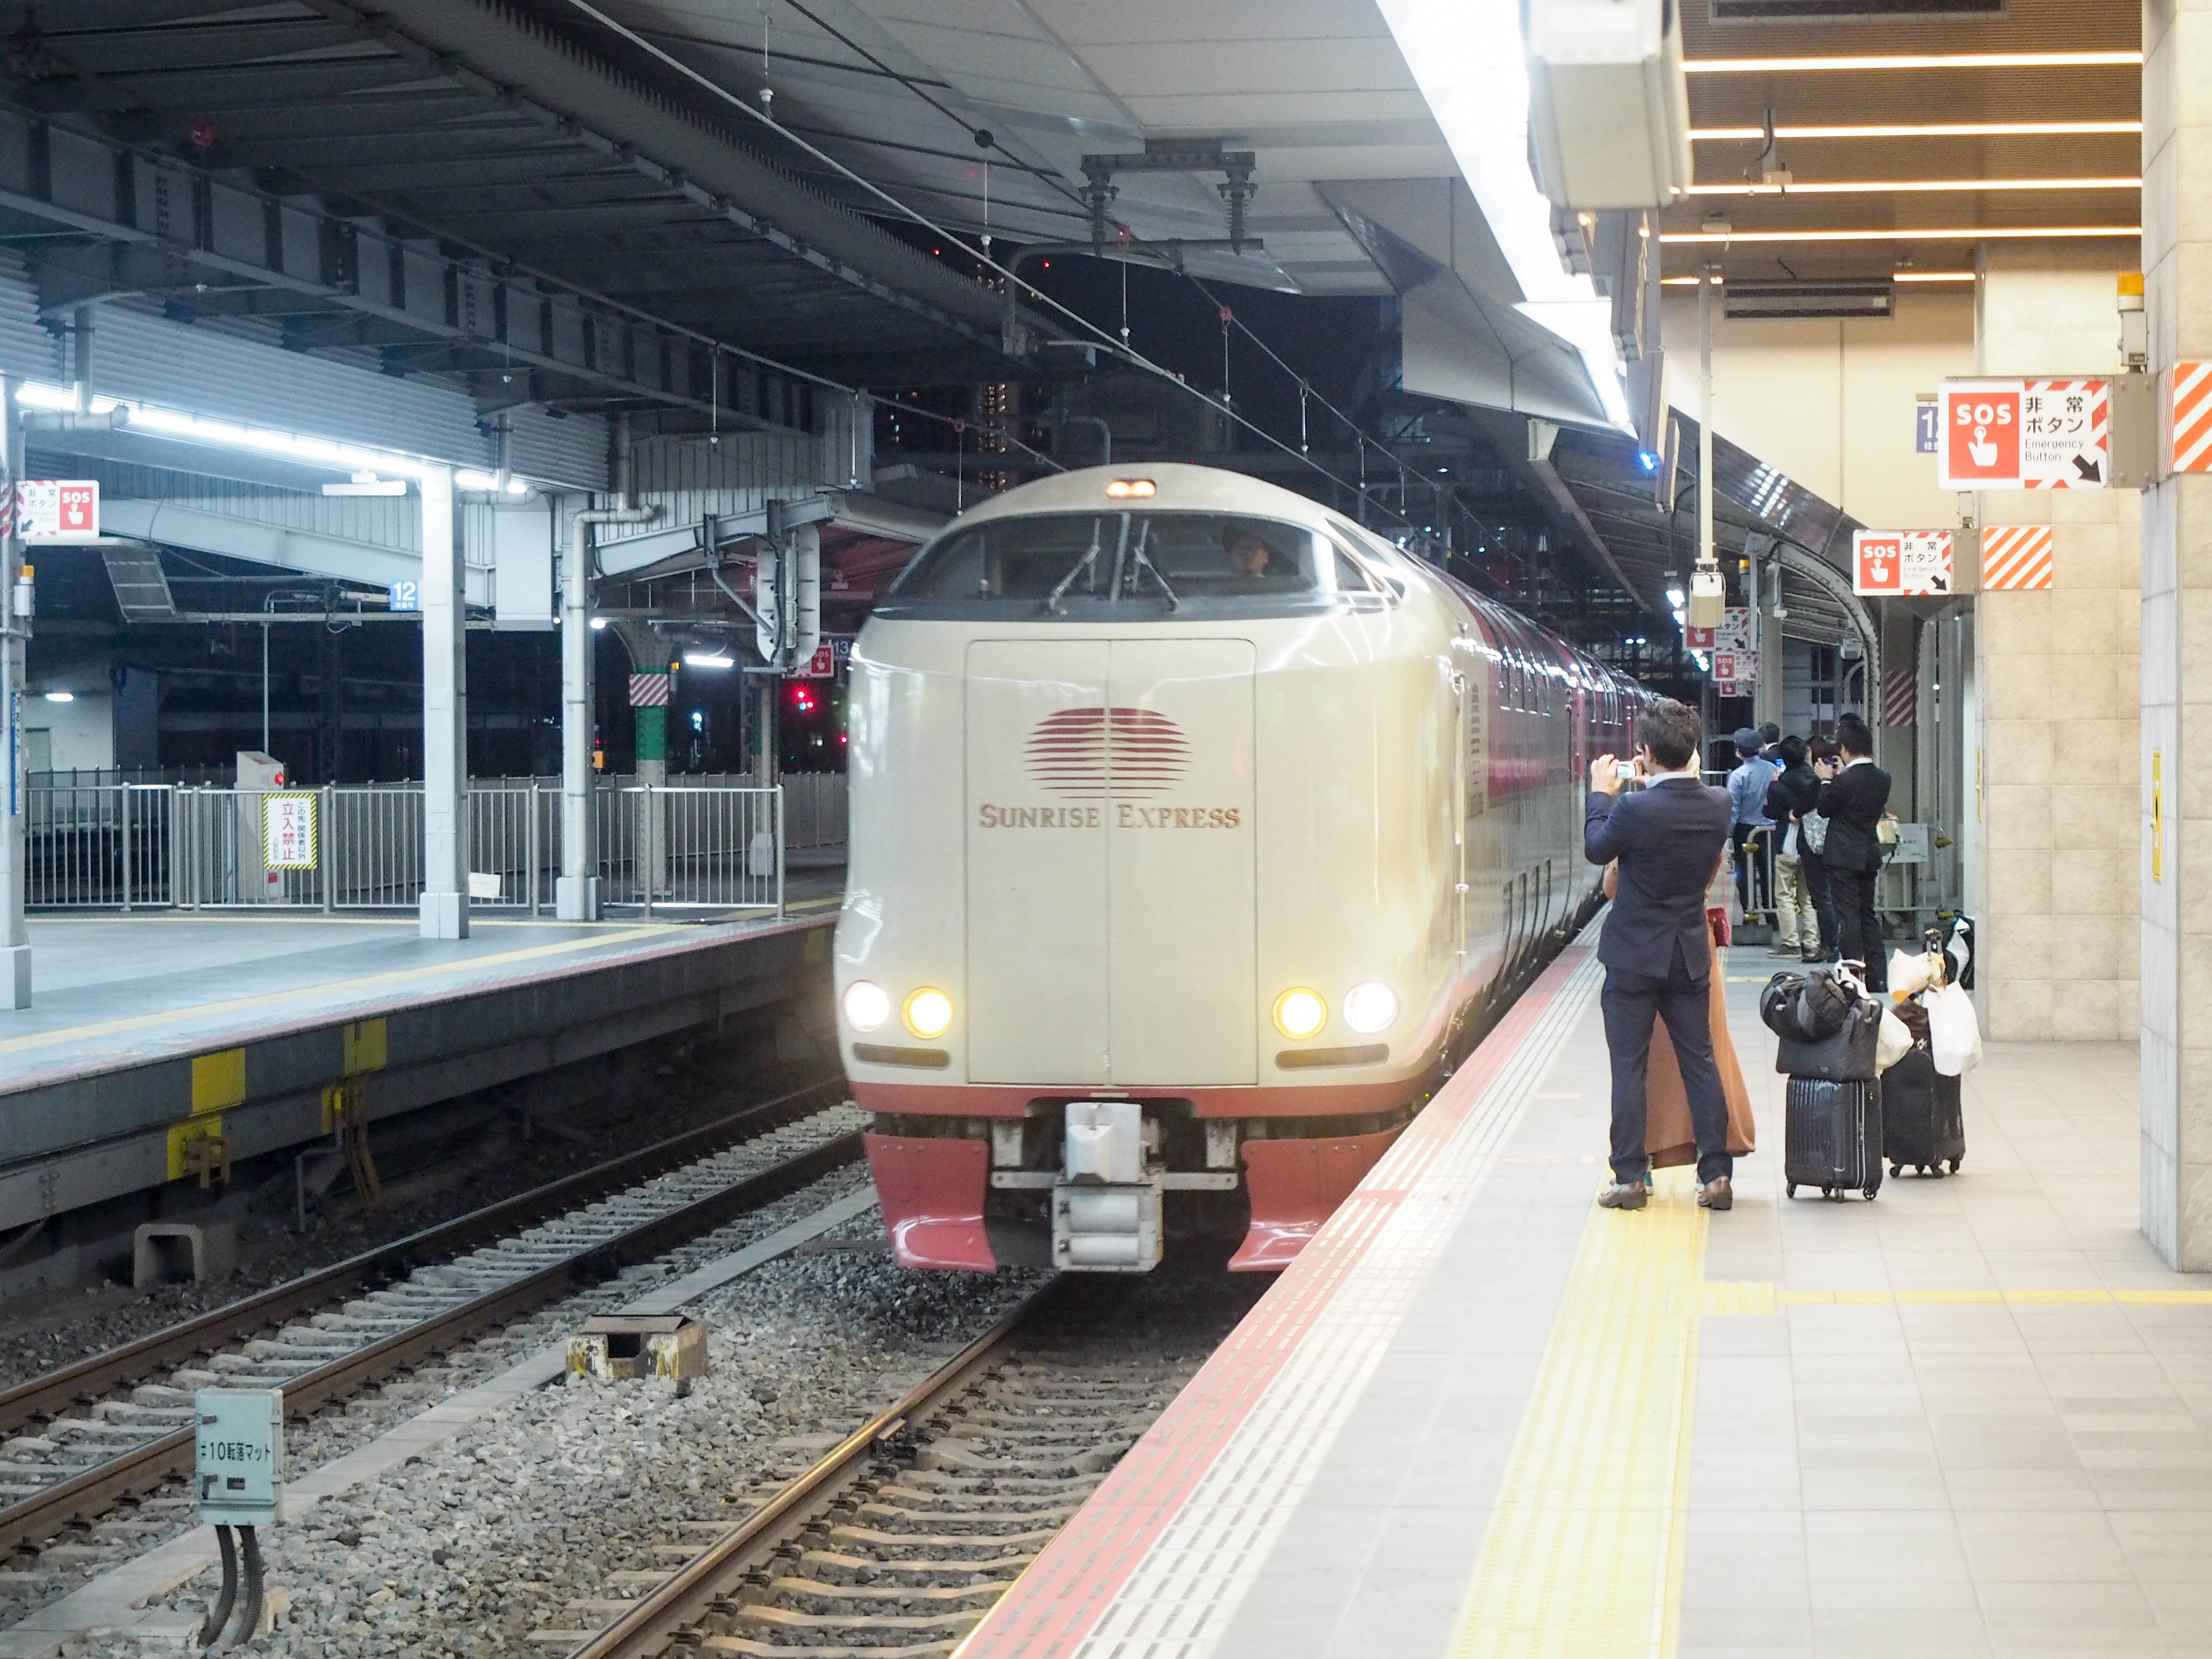 寝台特急「サンライズ出雲」大阪から東京までの夜行列車のノビノビ座席・オンライン予約方法を徹底解説